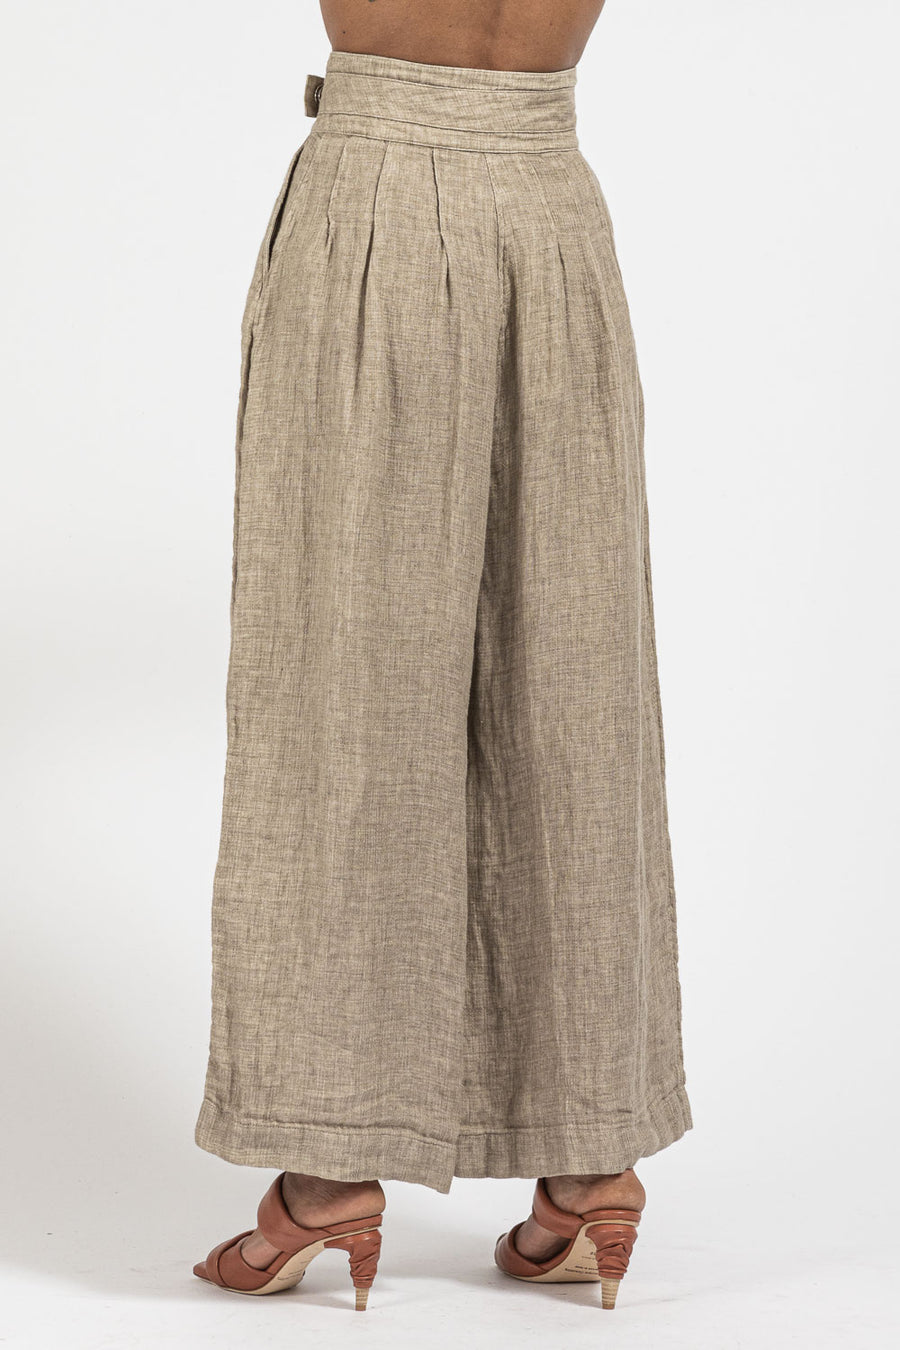 Pantalone NU Black da donna in lino e cotone color sand y22 13038